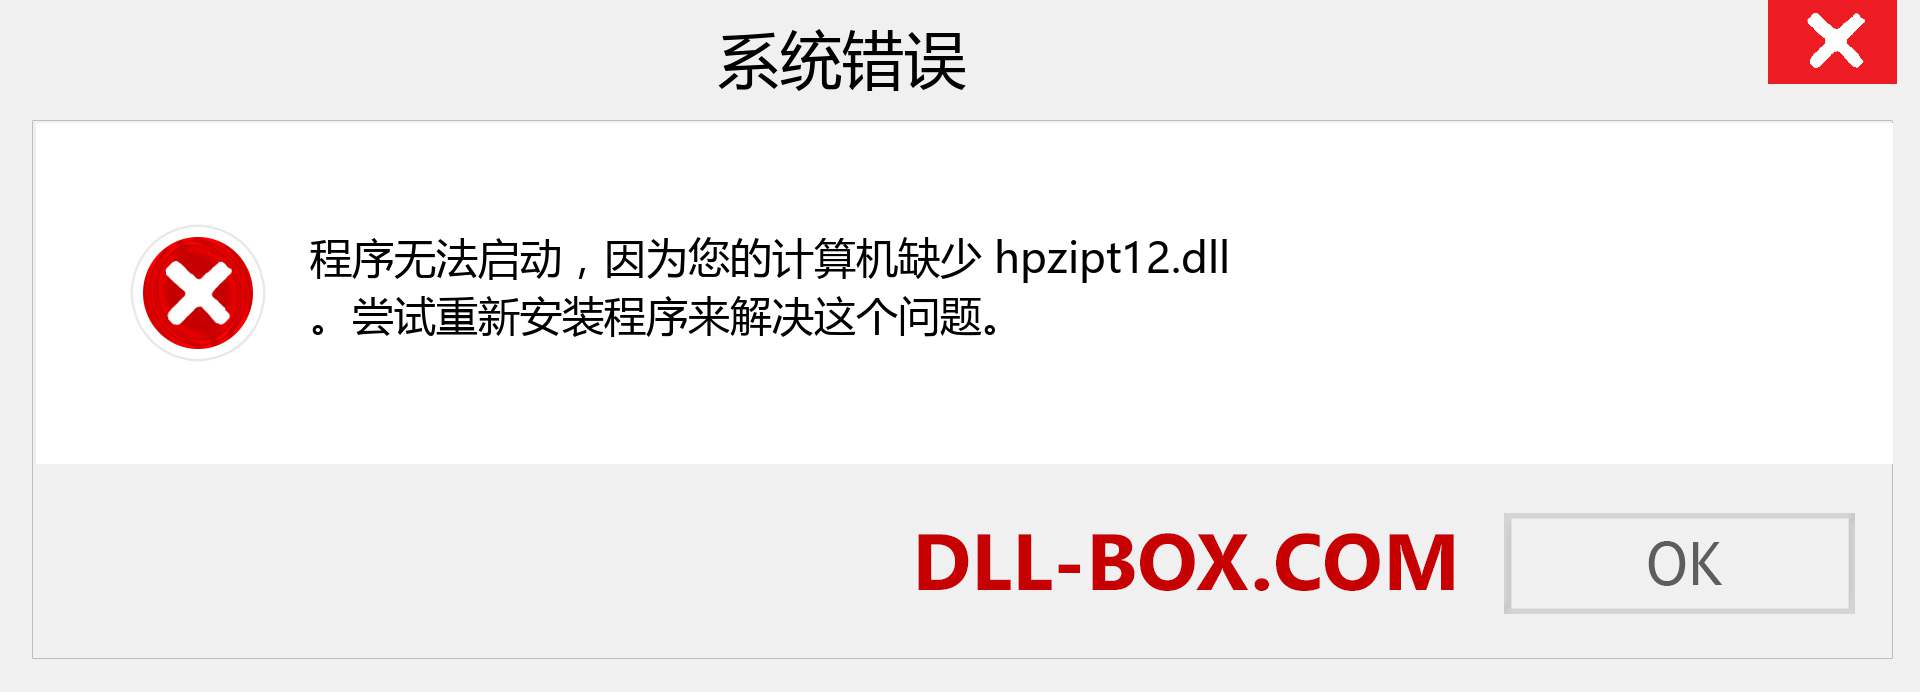 hpzipt12.dll 文件丢失？。 适用于 Windows 7、8、10 的下载 - 修复 Windows、照片、图像上的 hpzipt12 dll 丢失错误